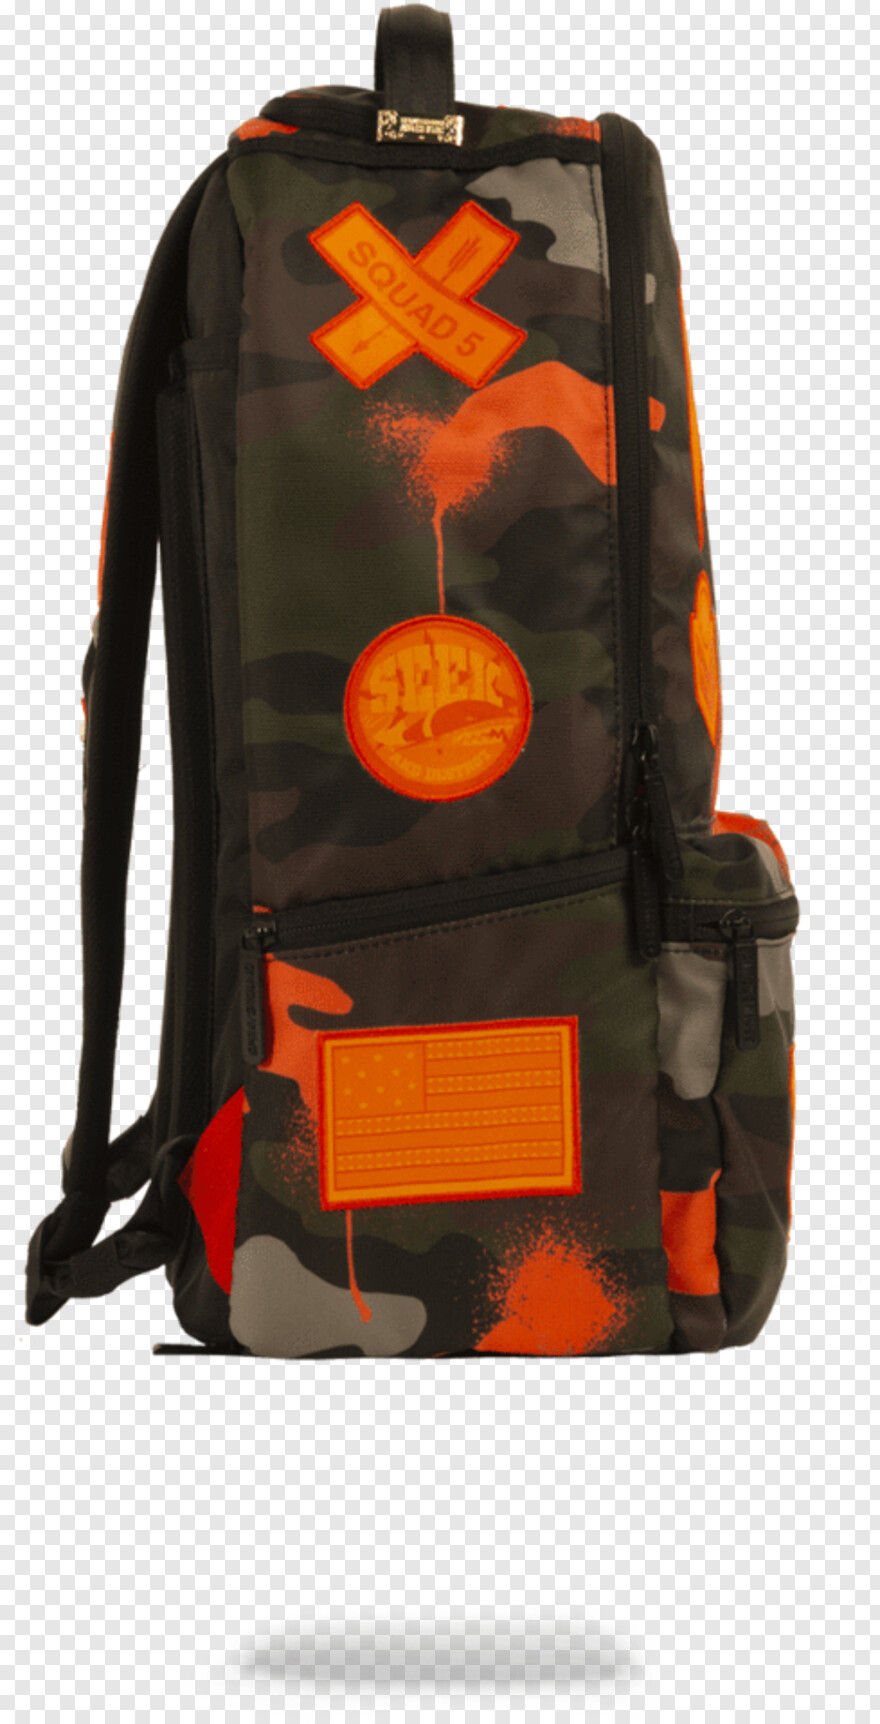 backpack # 484195